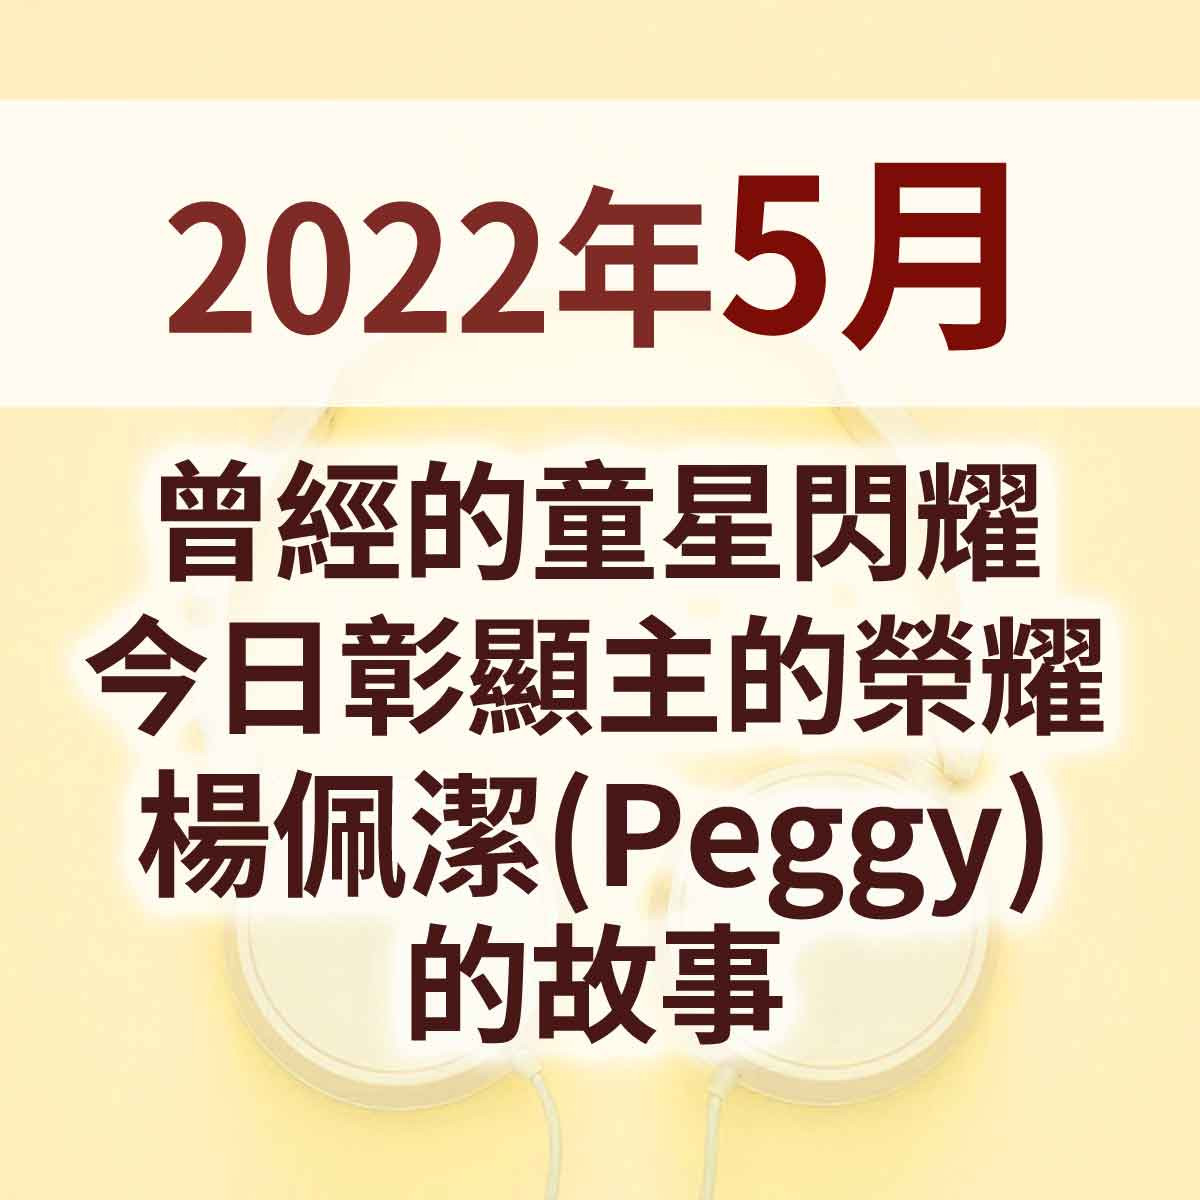 2022年5月 - 曾經的童星閃耀，今日彰顯主的榮耀 - 楊佩潔(Peggy)的故事封面圖